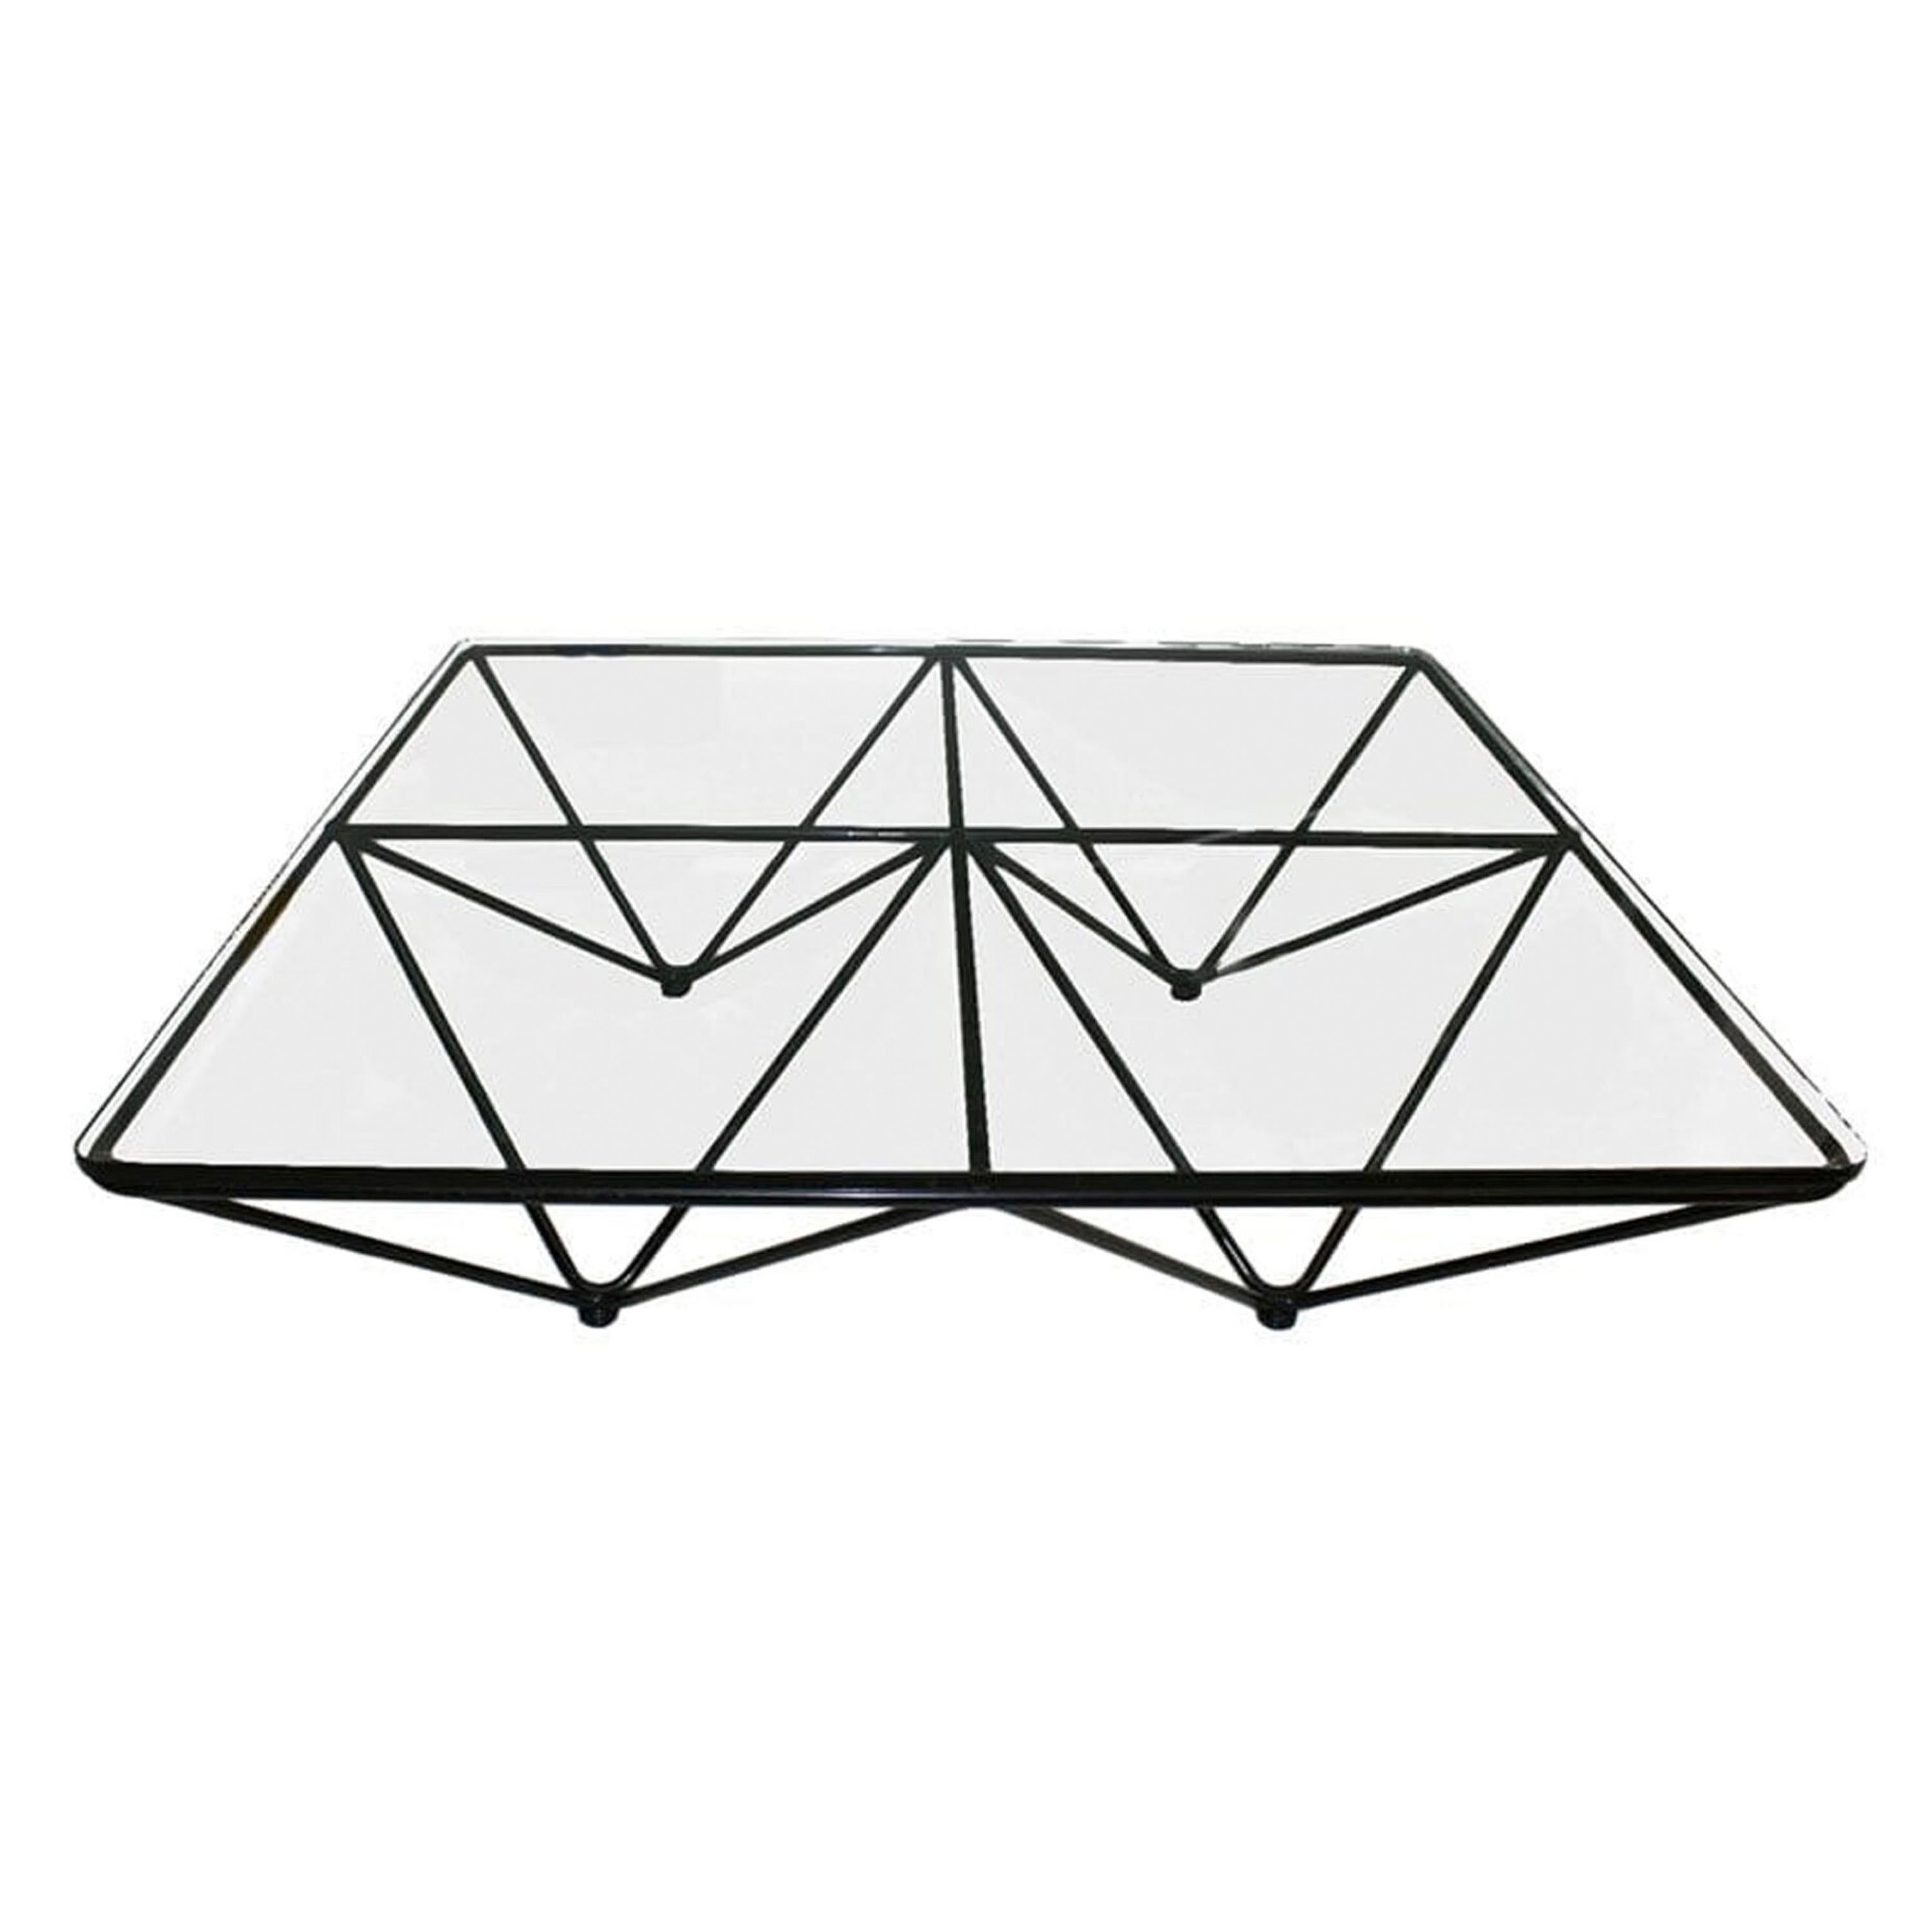 Table basse rectangulaire du célèbre designer italien Paolo Piva des années 1970 éditée par B&B Italia, modèle Alanda. Il est composé d'un plateau en verre et d'une base en métal tubulaire géométrique laqué noir. 

Paolo Piva (Adria, Italie, 1950-